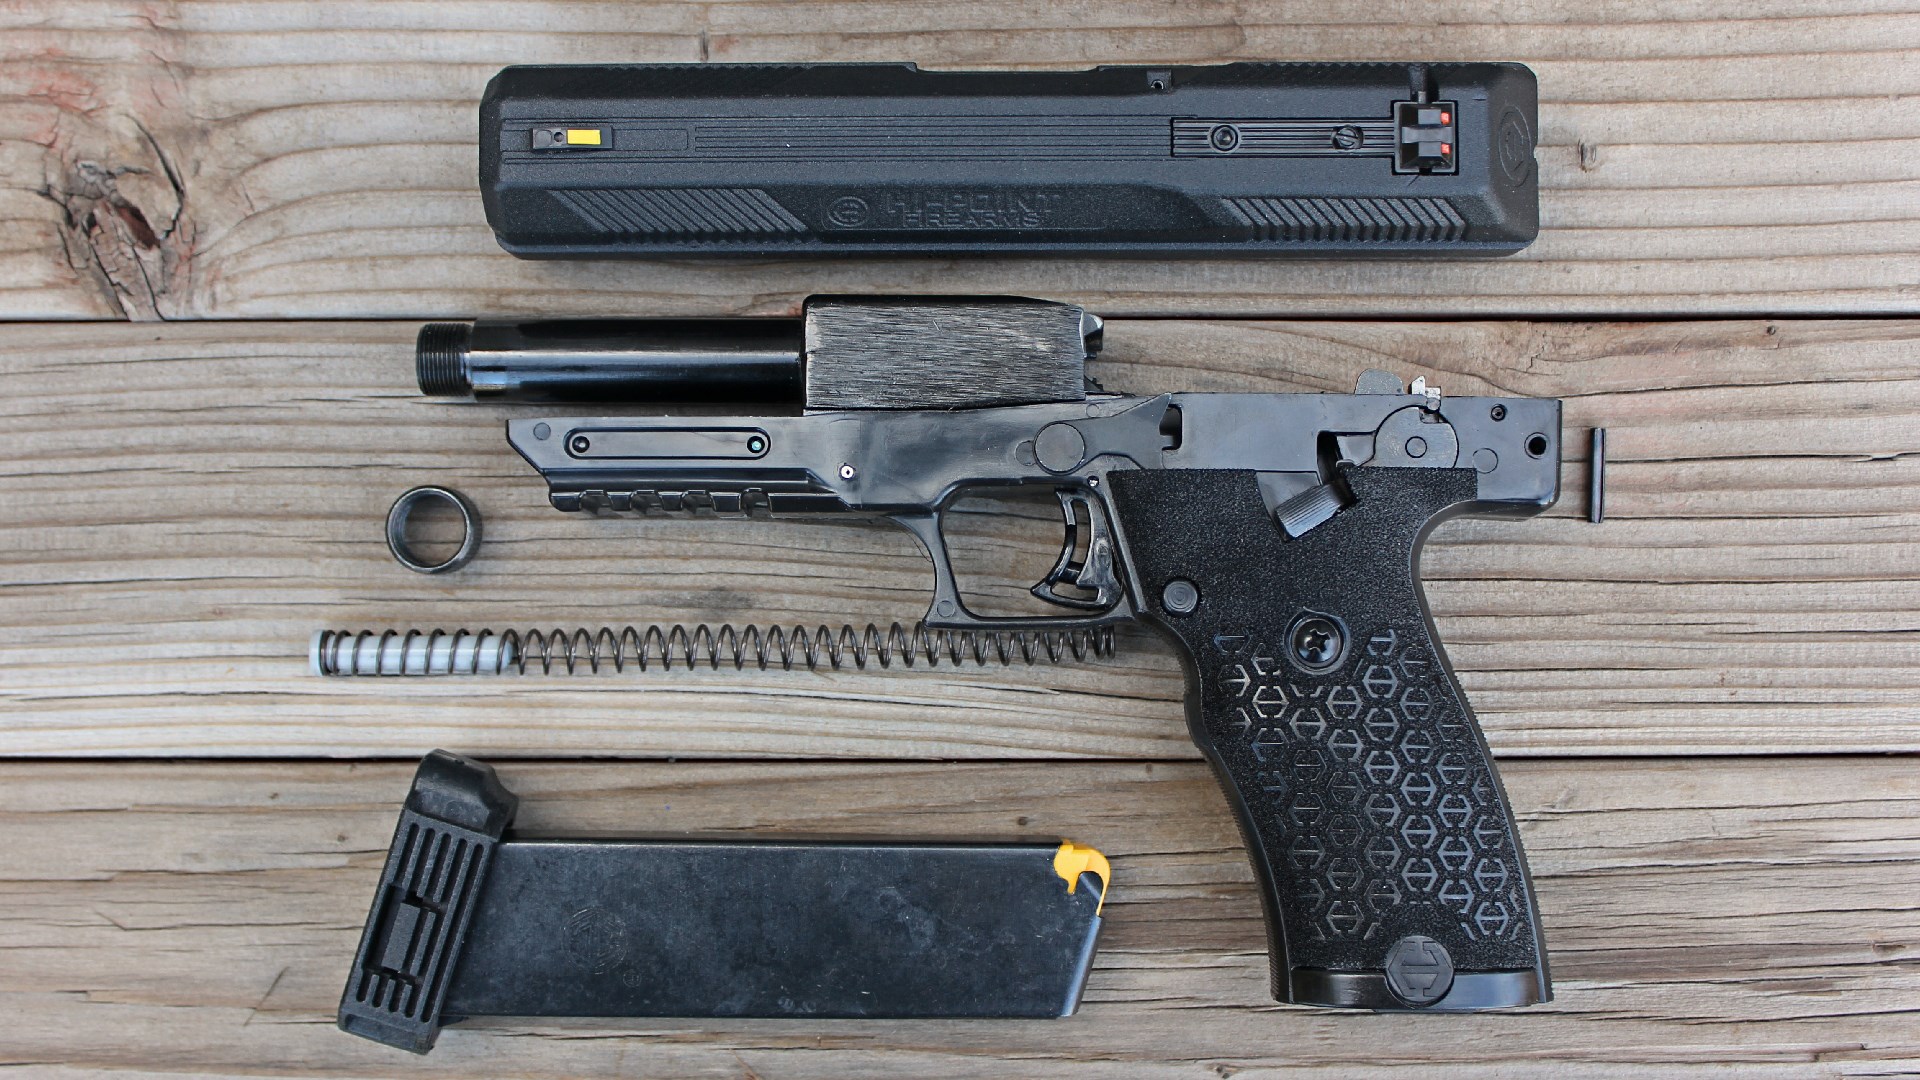 Disassembled view of Hi-Point JXP 10 left side slide barrel spring magazine pistol frame shown on wood boards